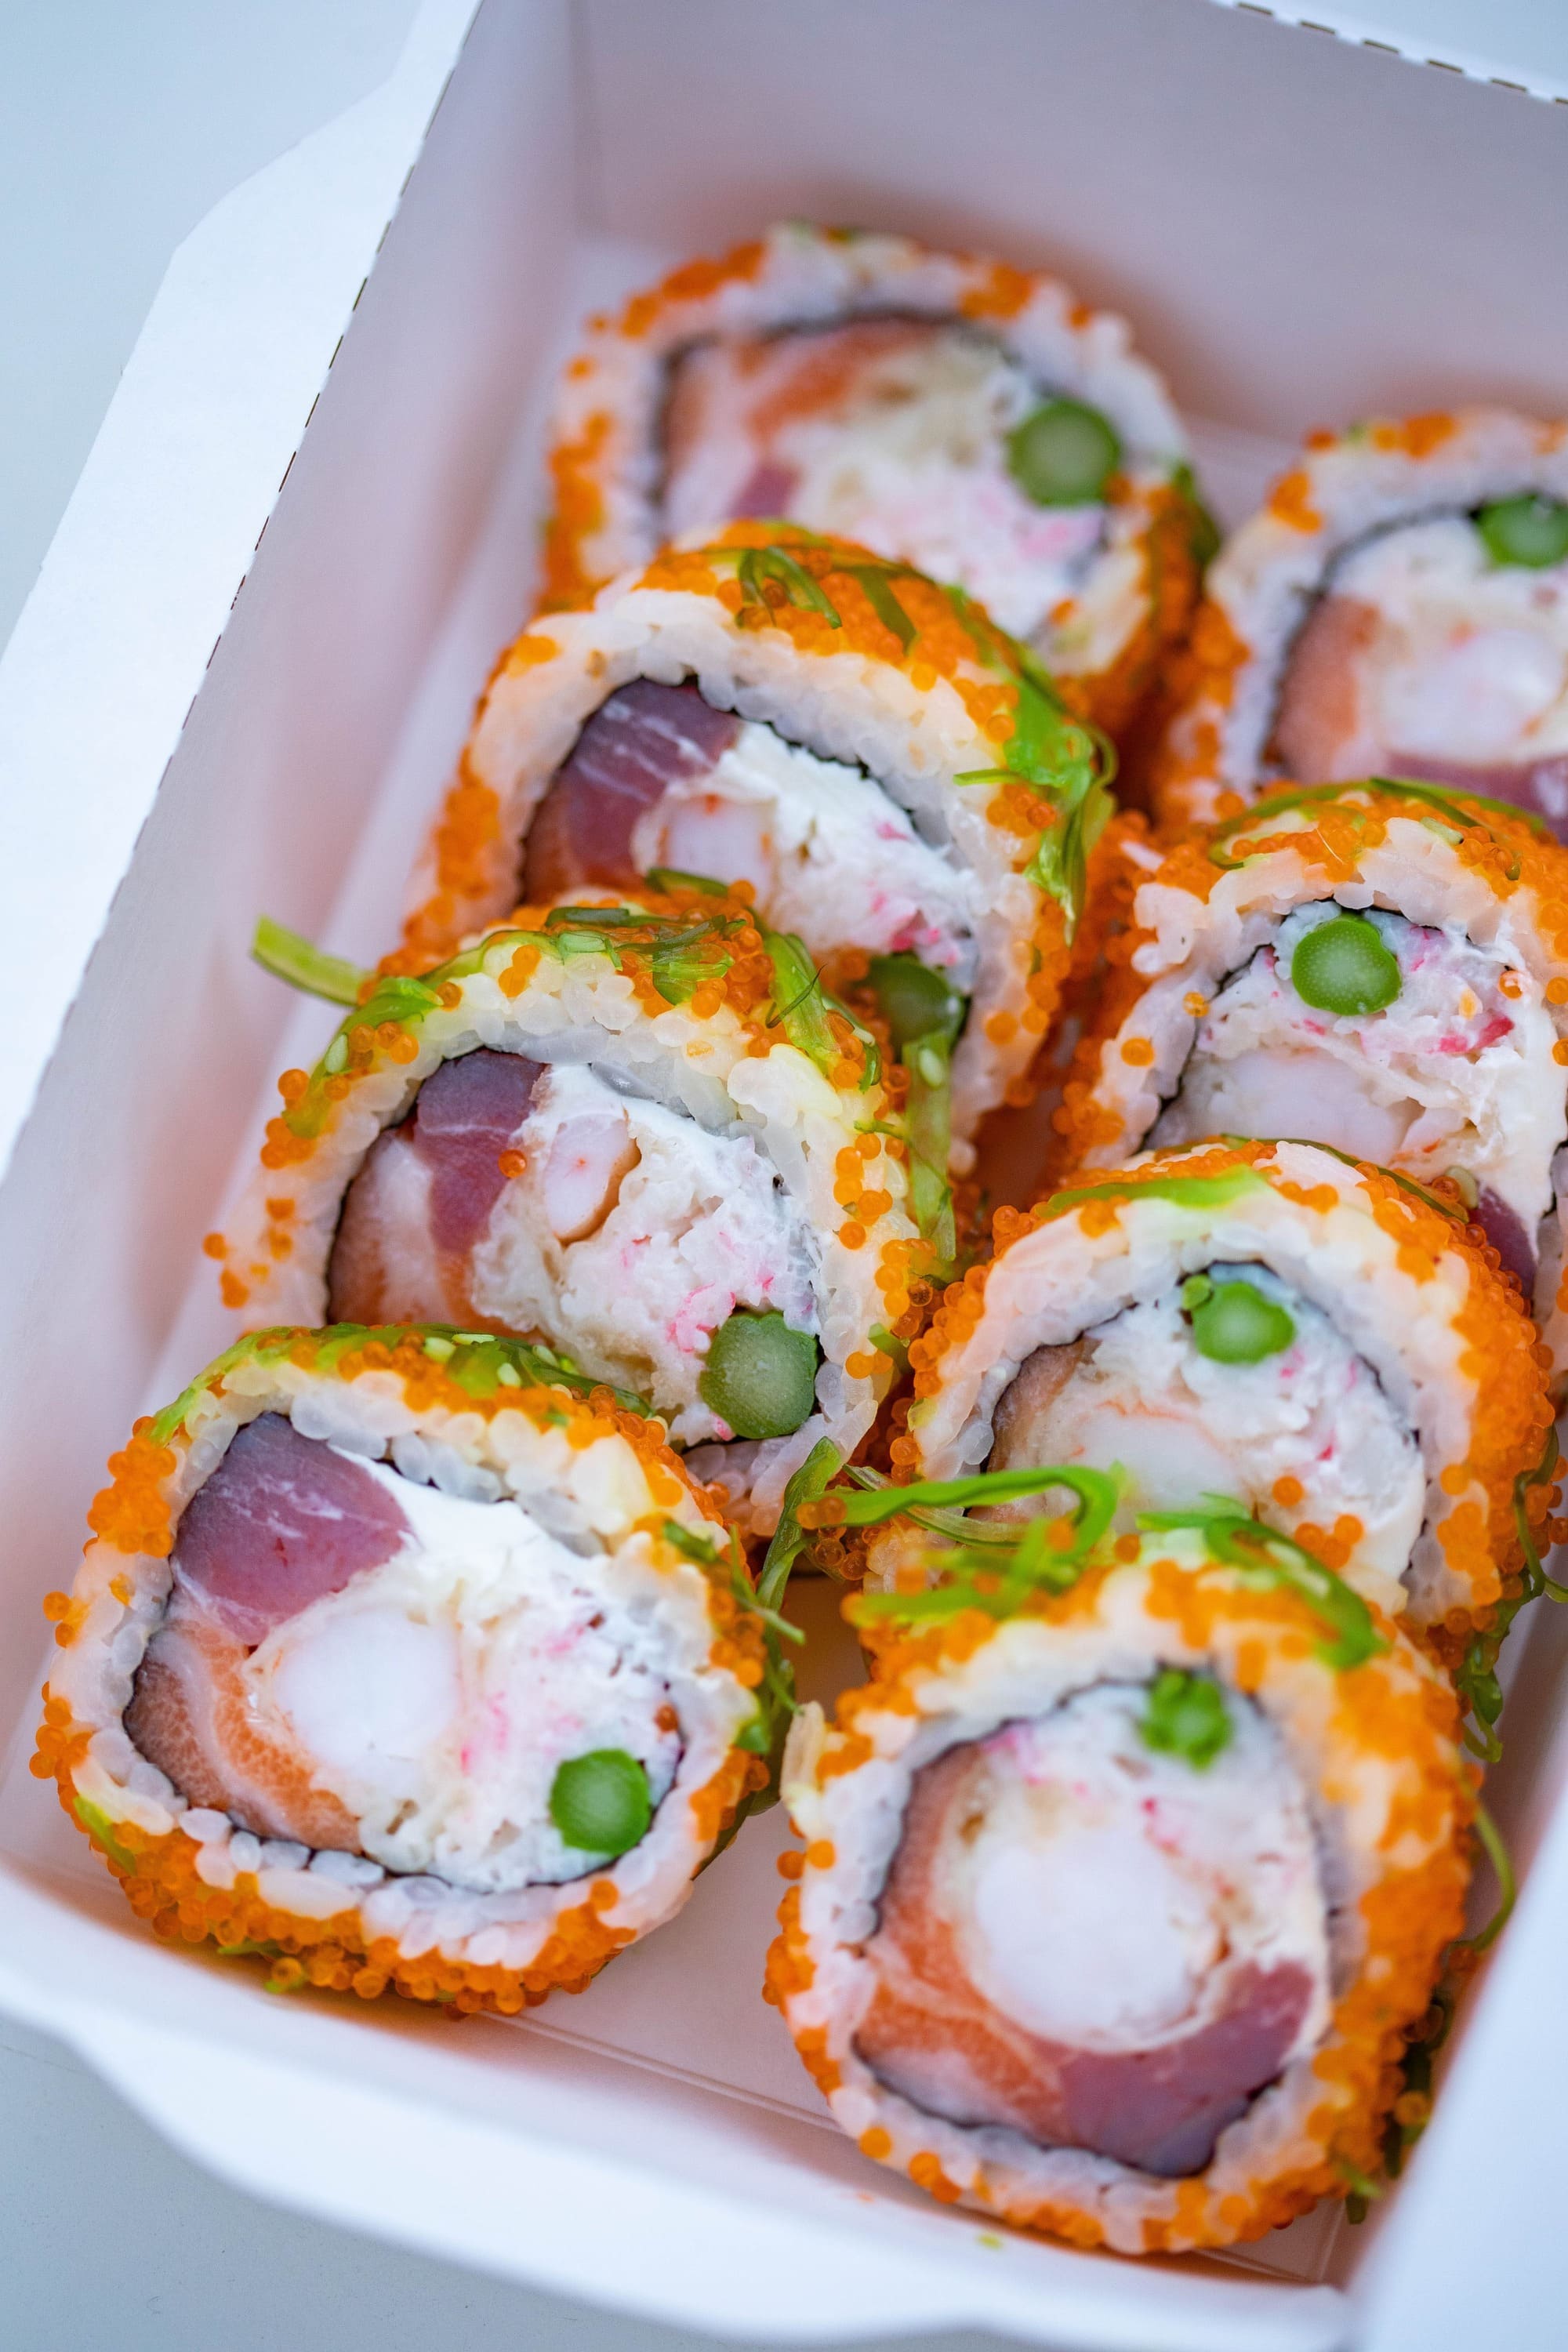 Imagen de sushi fresco y colorido, con una presentación artística que refleja la frescura de los ingredientes y la pasión por la gastronomía japonesa